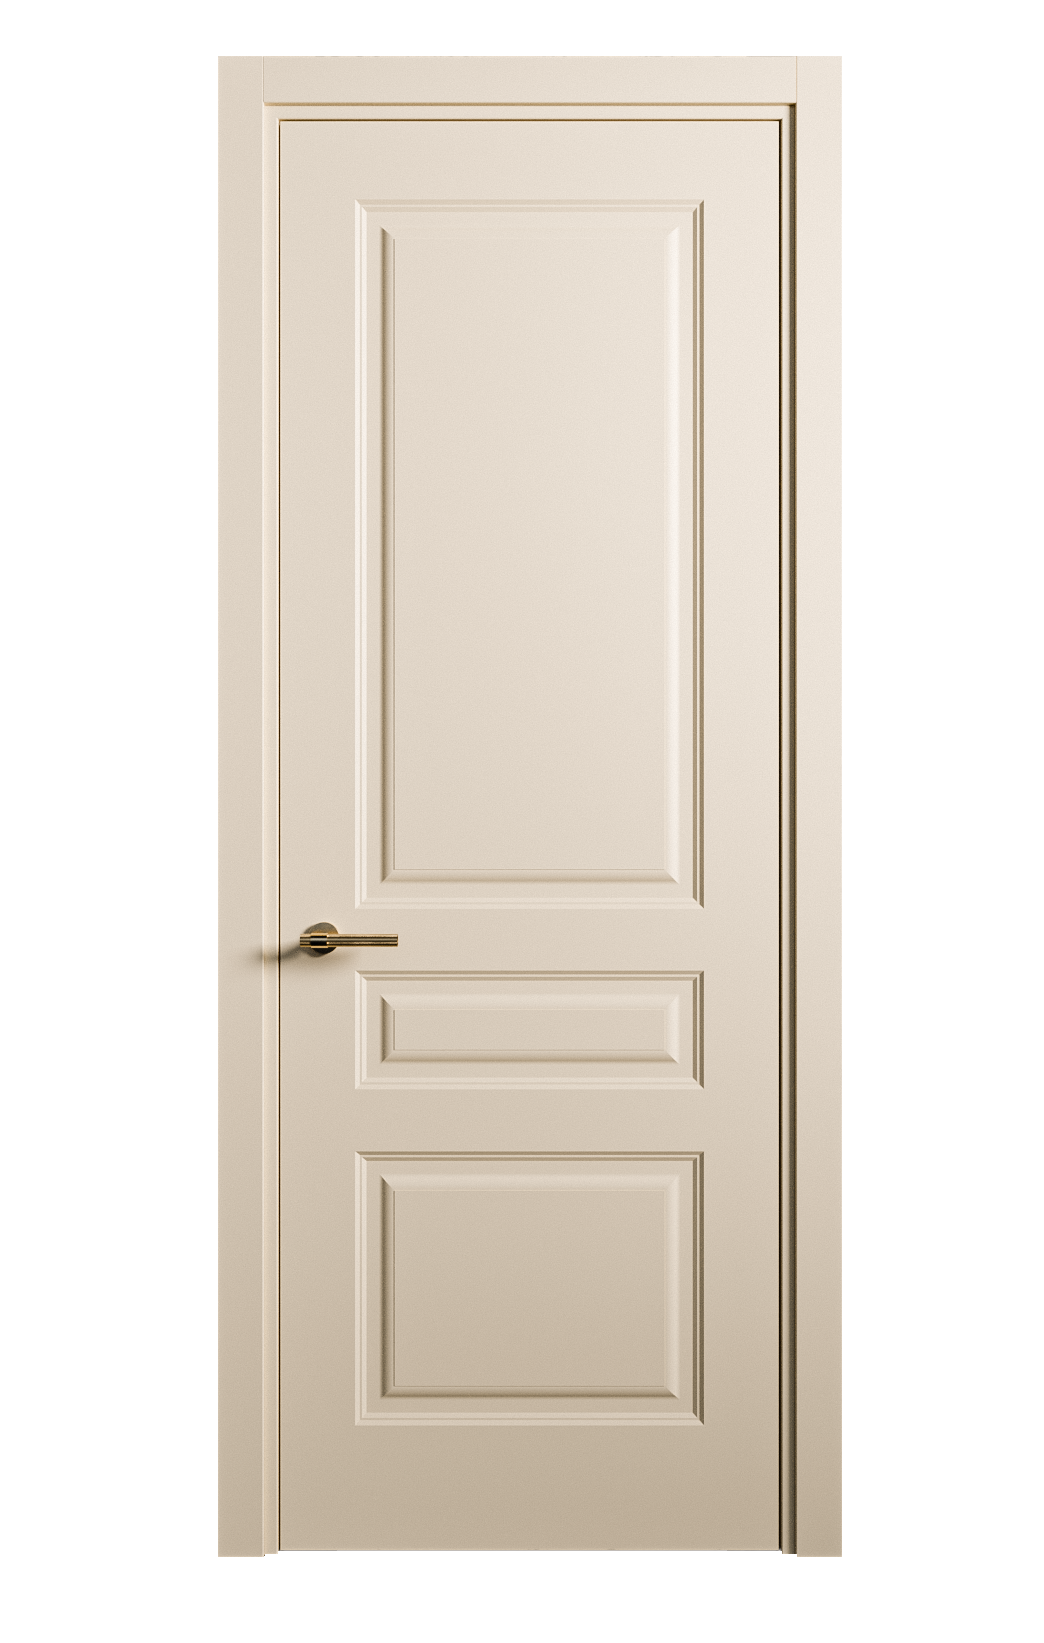 Межкомнатная дверь Вита-2 глухая эмаль ral 1015 26314